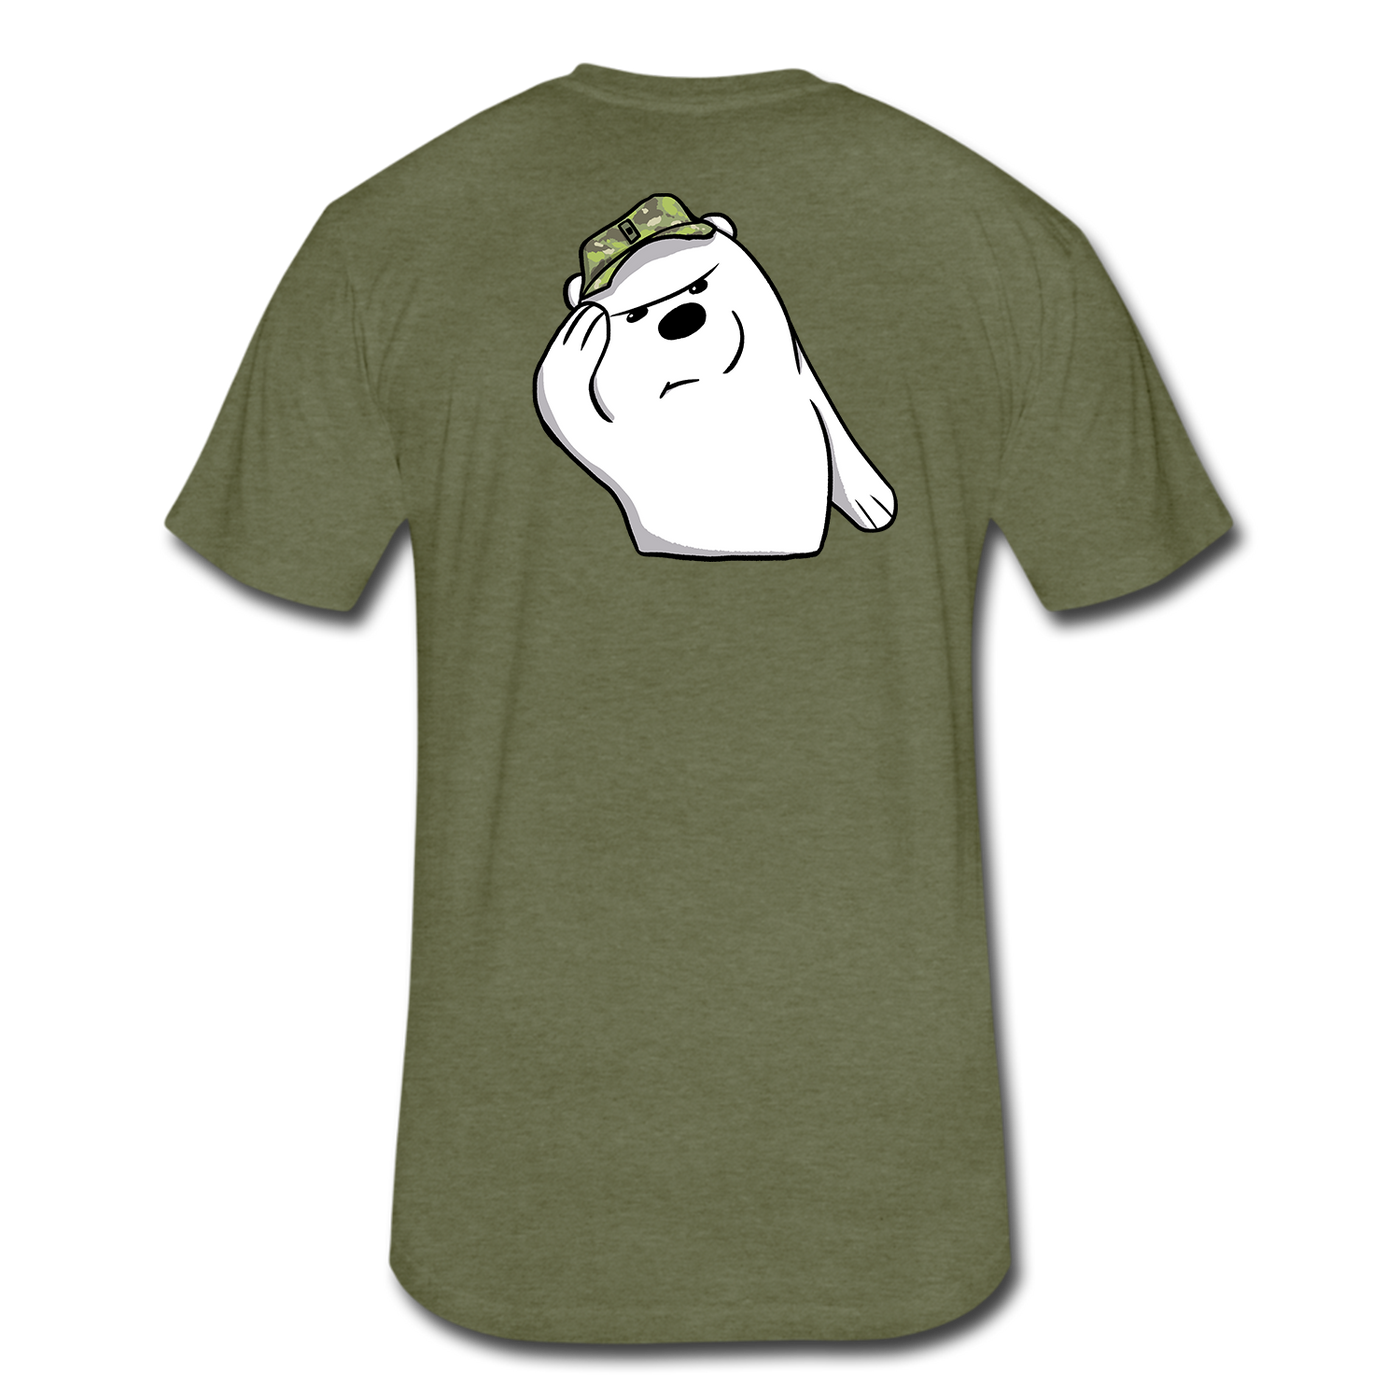 B Co, 1-52 Ice Bears T-Shirt